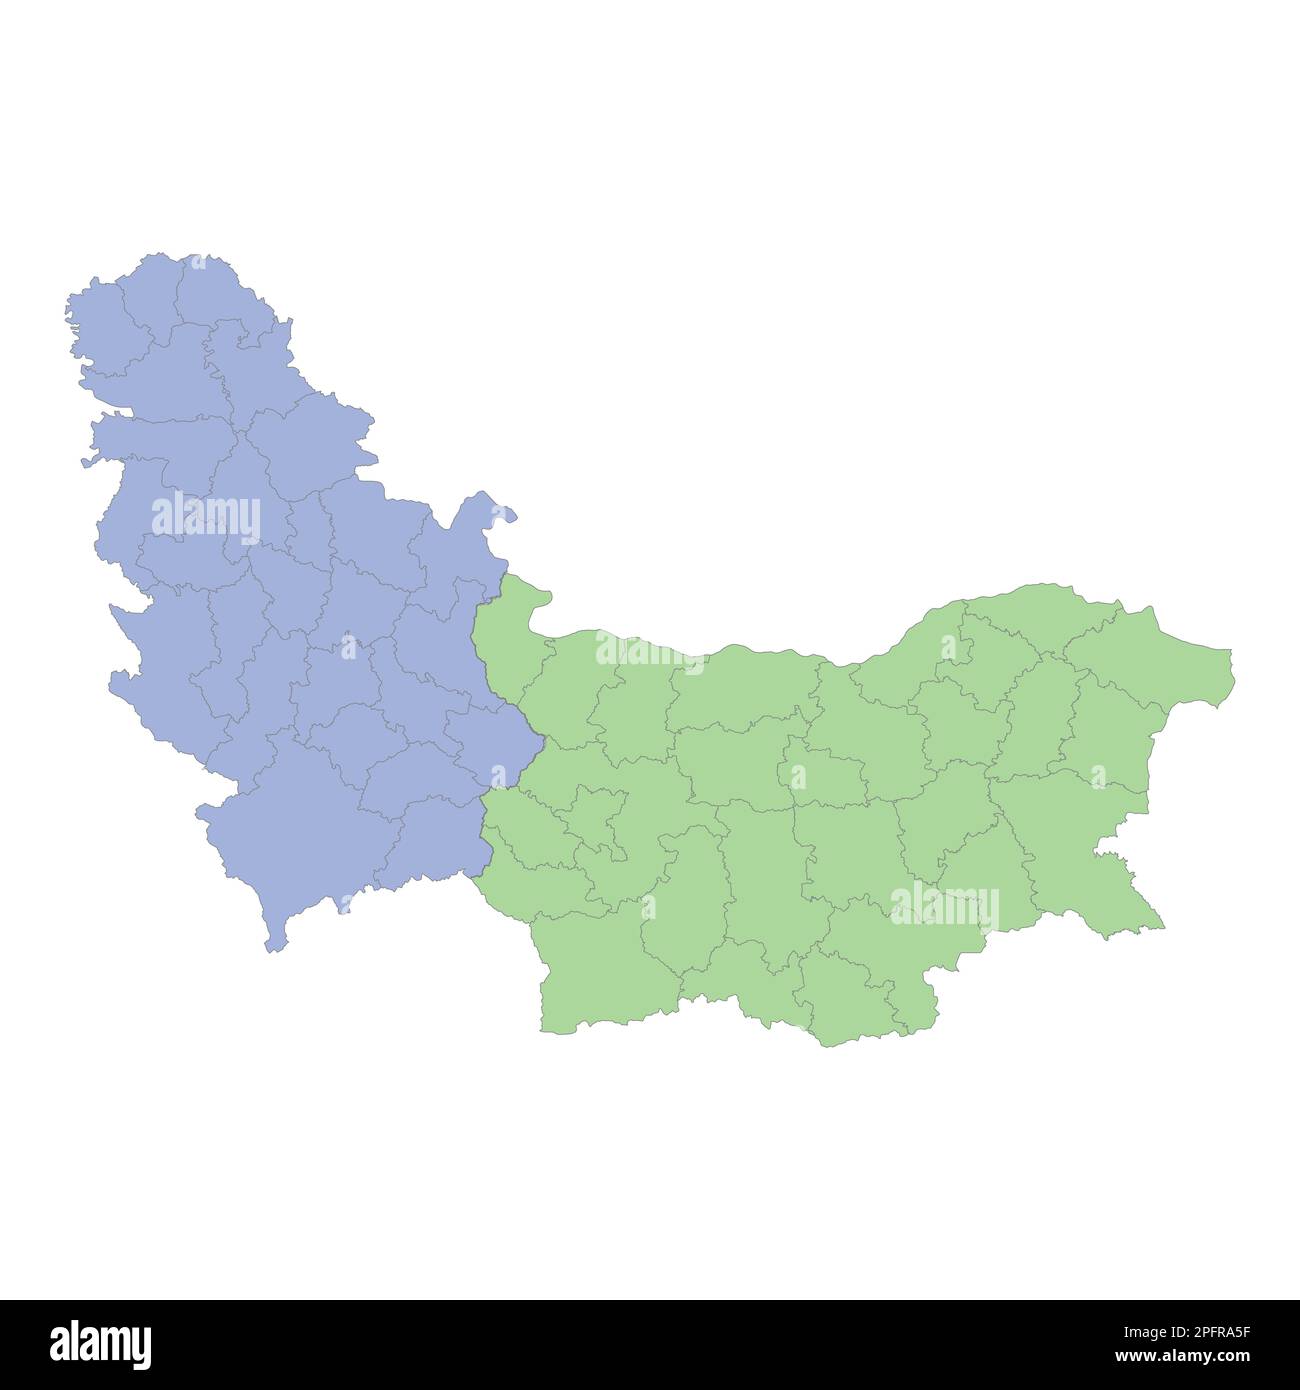 Mappa politica di alta qualità di Serbia e Bulgaria con i confini delle regioni o province. Illustrazione vettoriale Illustrazione Vettoriale